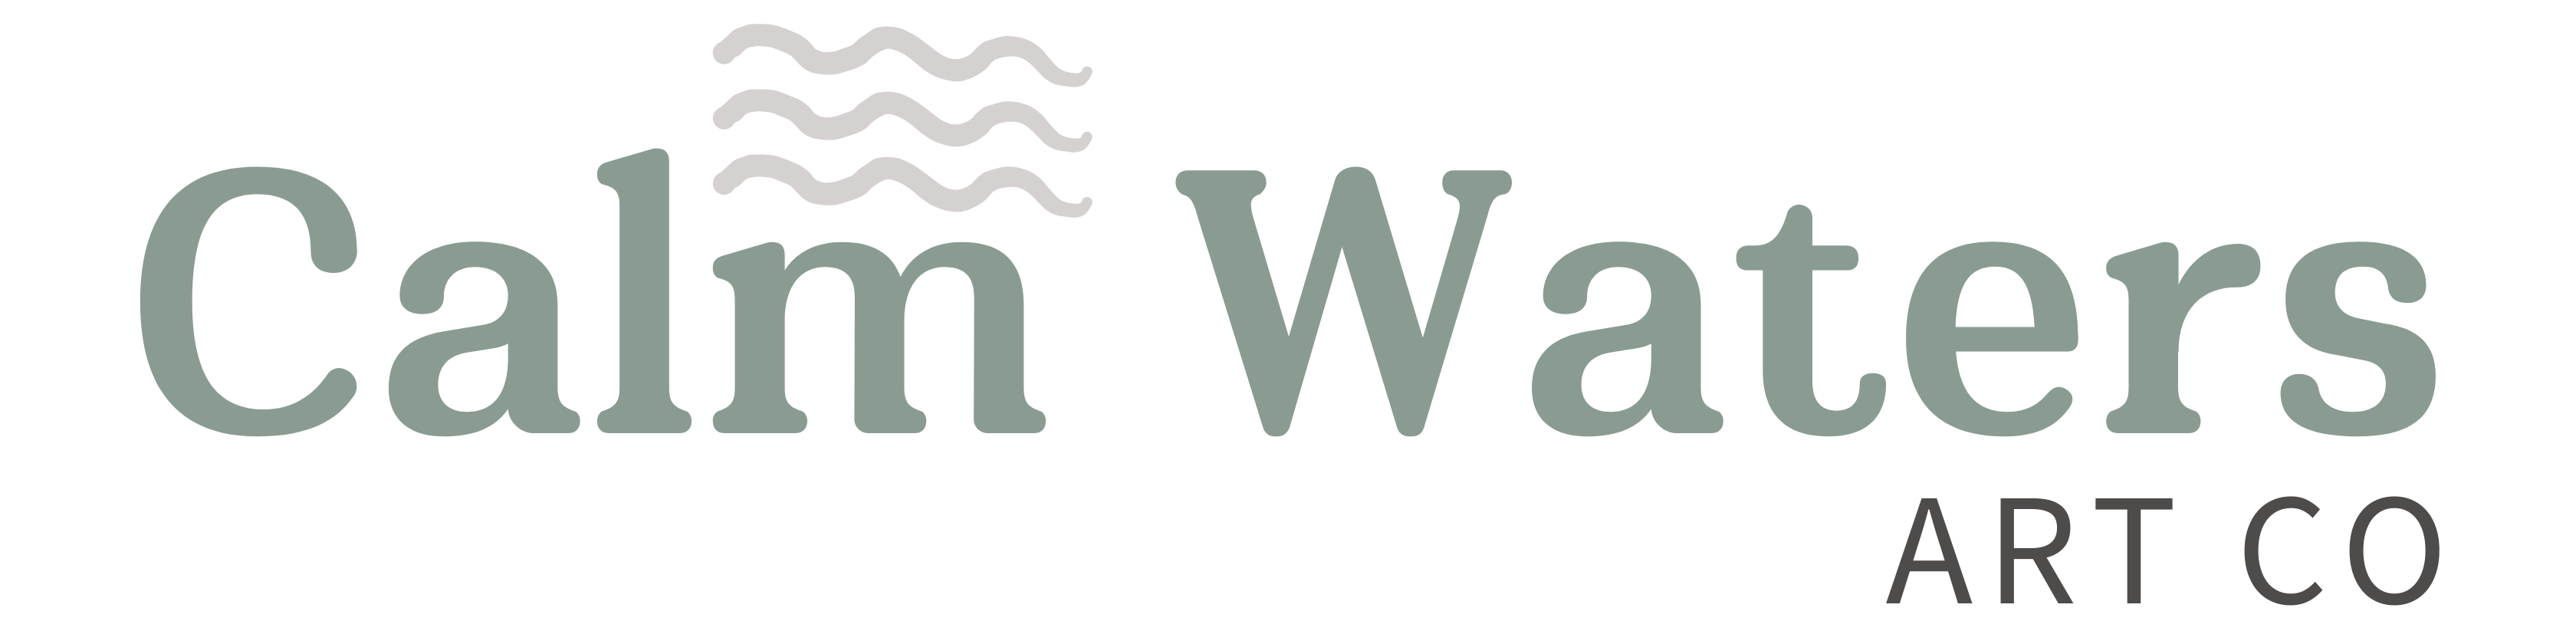 calmwatersartco banner logo